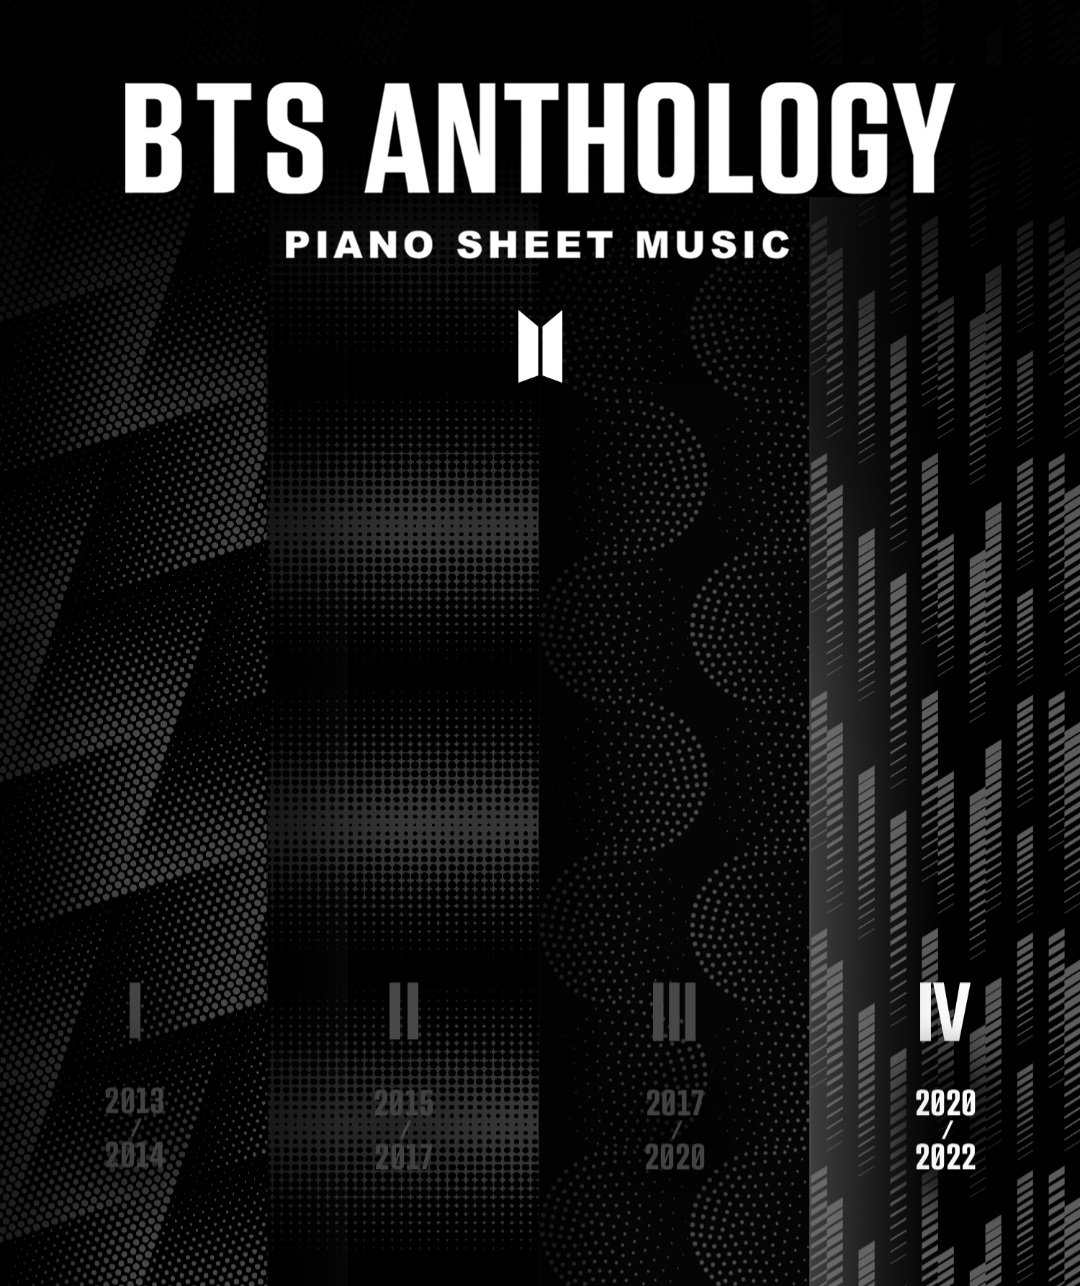 Bts-anthology-4-piano-sheet-music1.jpg